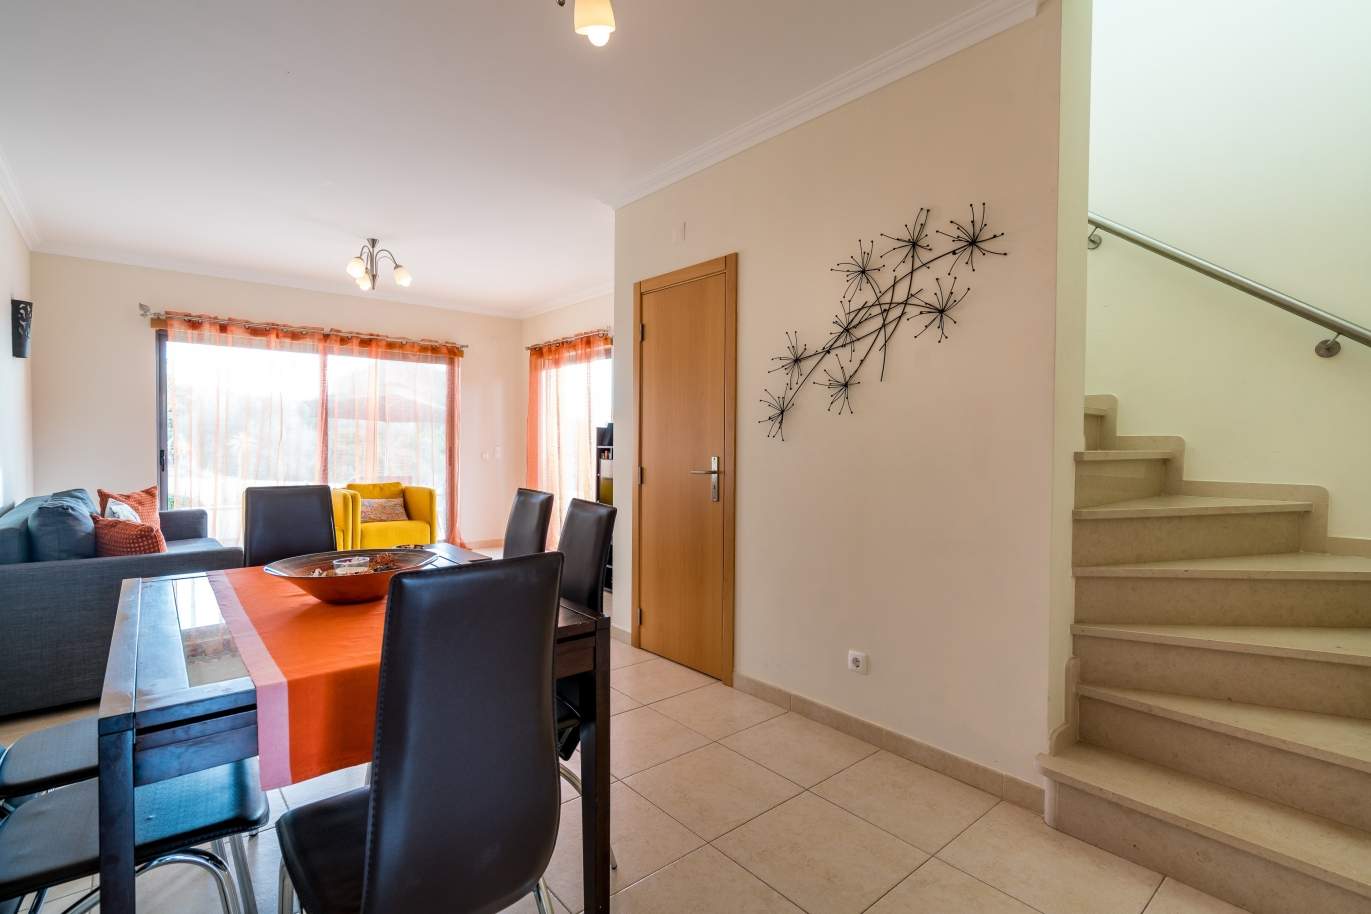 Sale of villa in private condominium in Albufeira, Algarve, Portugal_126885